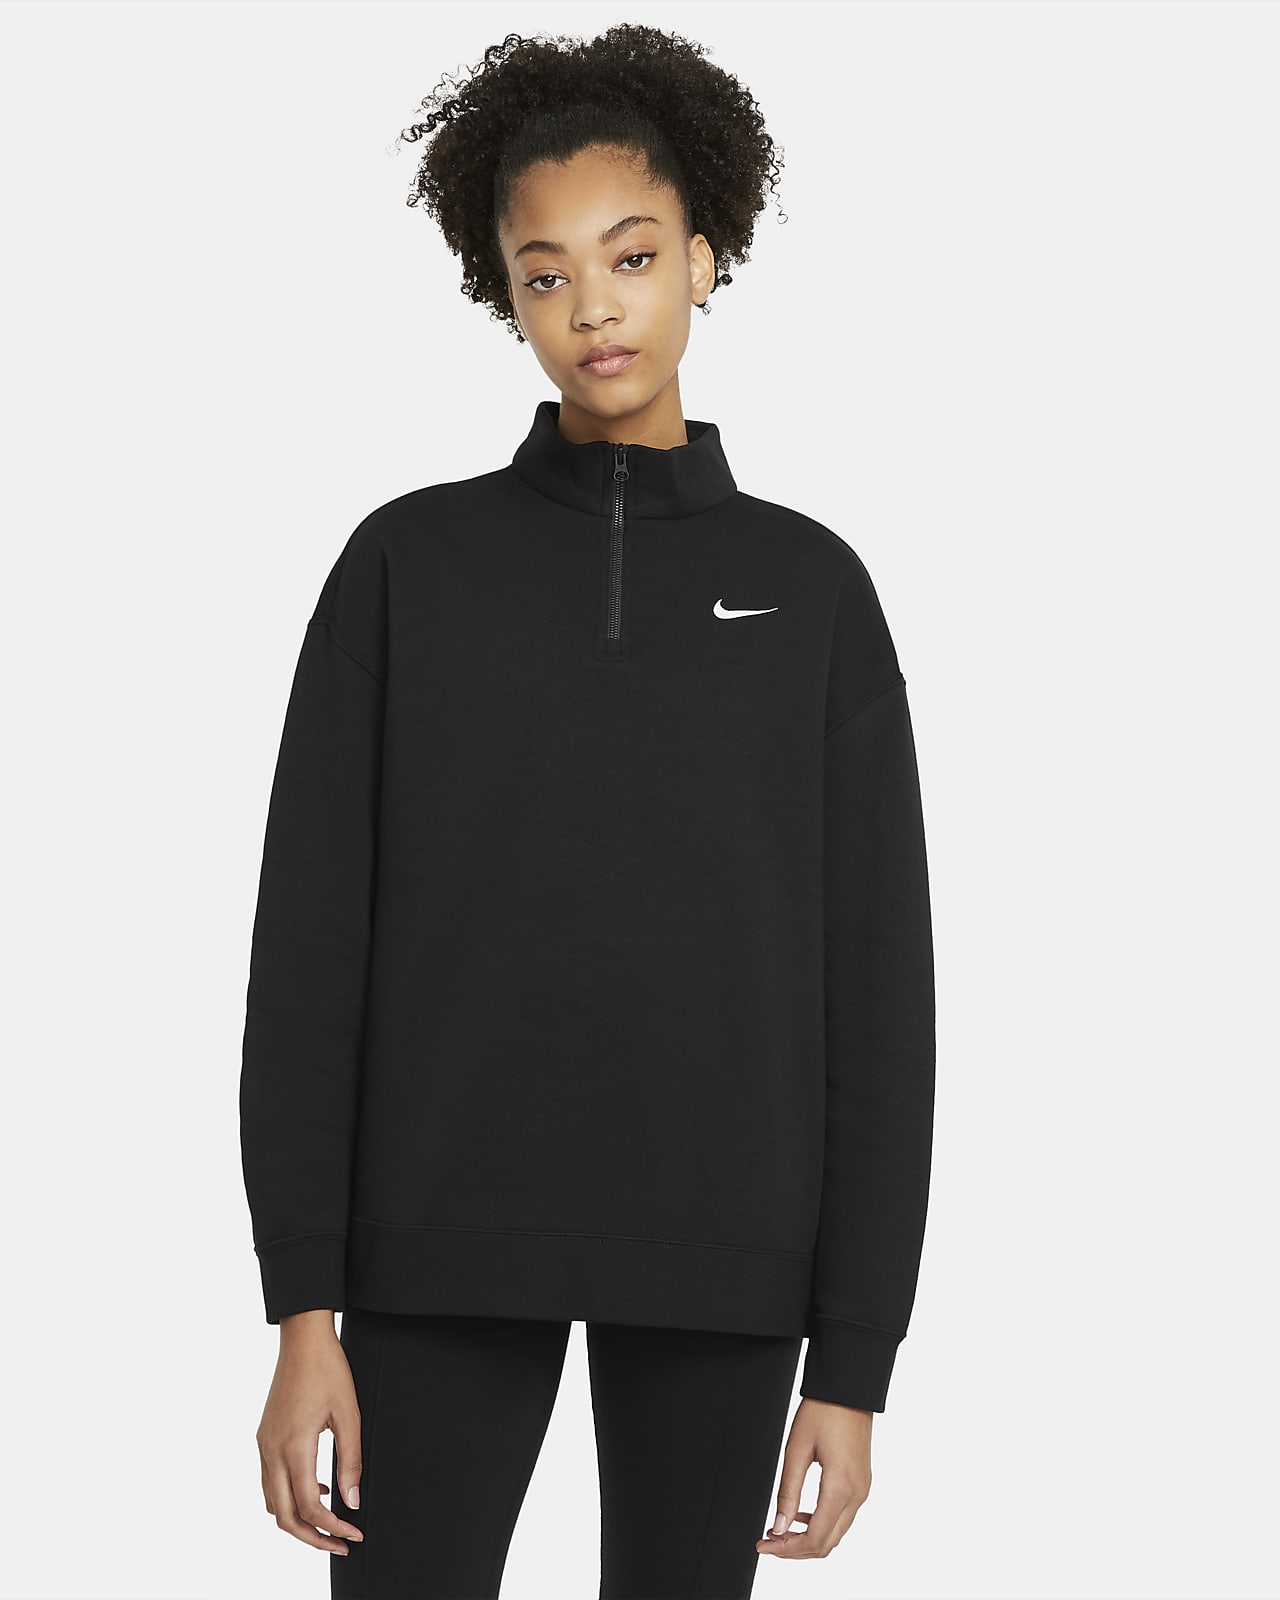 Nike Sportswear Women's 1/4-Zip Fleece. Nike MA